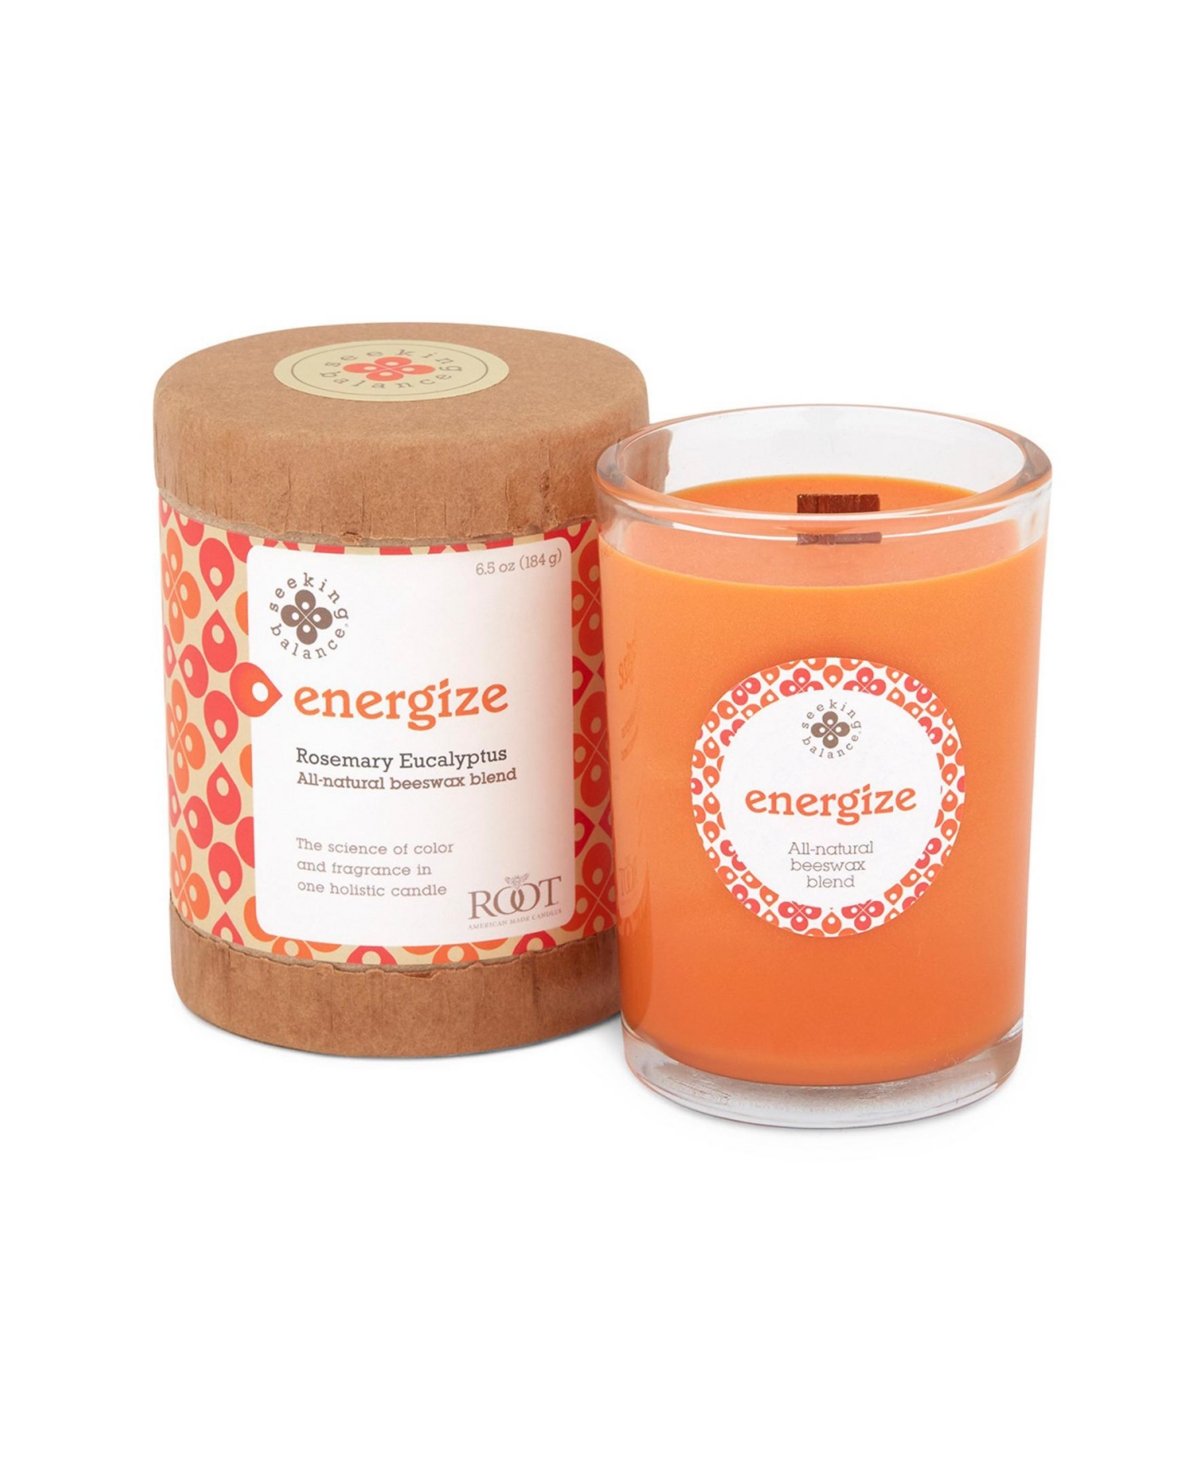 Seeking Balance Energize Rosemary Eucalyptus Spa Jar Candle, 6.5 oz - Orange